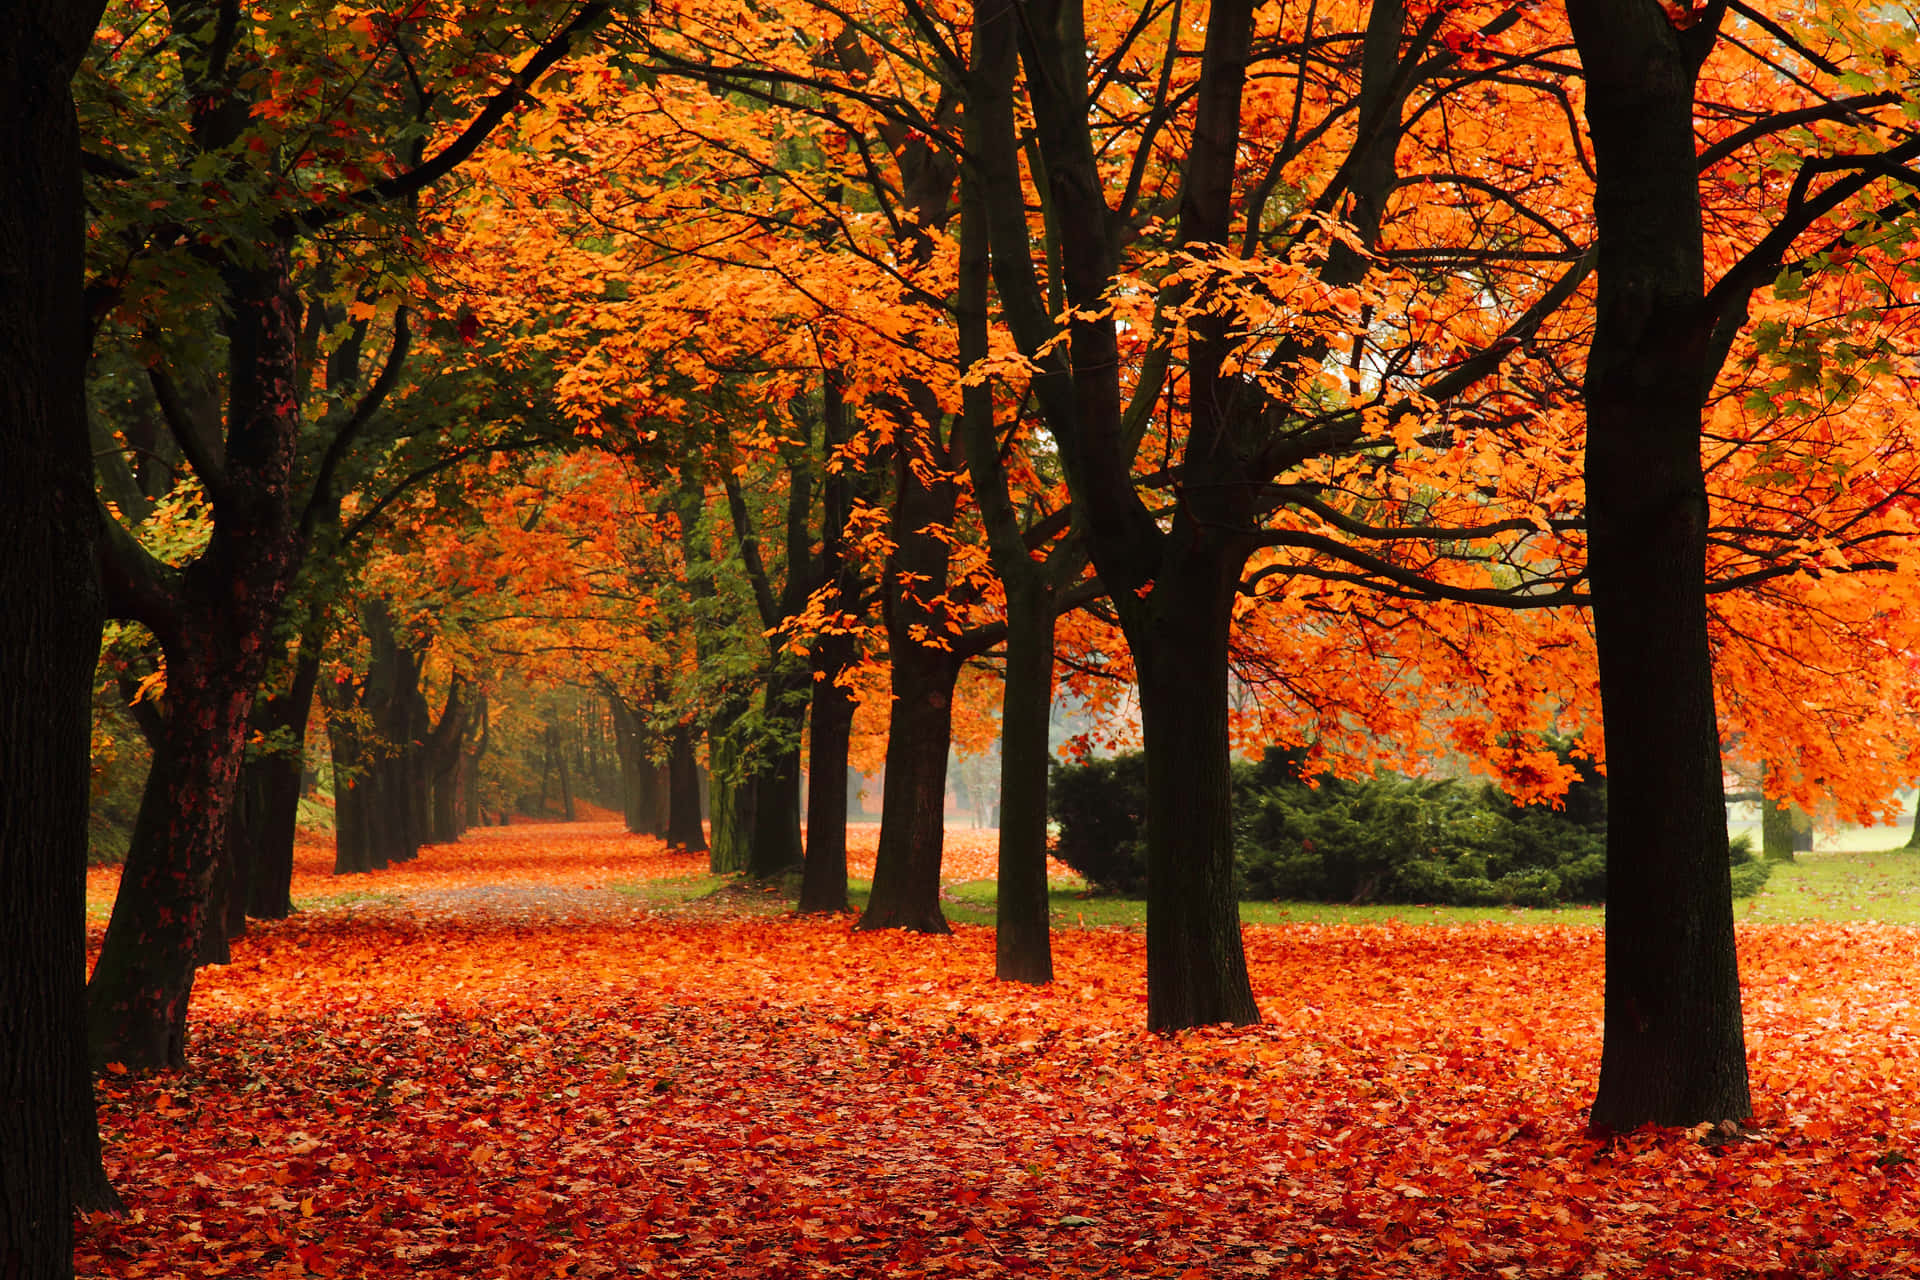 Amatela Bellezza Dell'autunno In Questa Splendida Fotografia